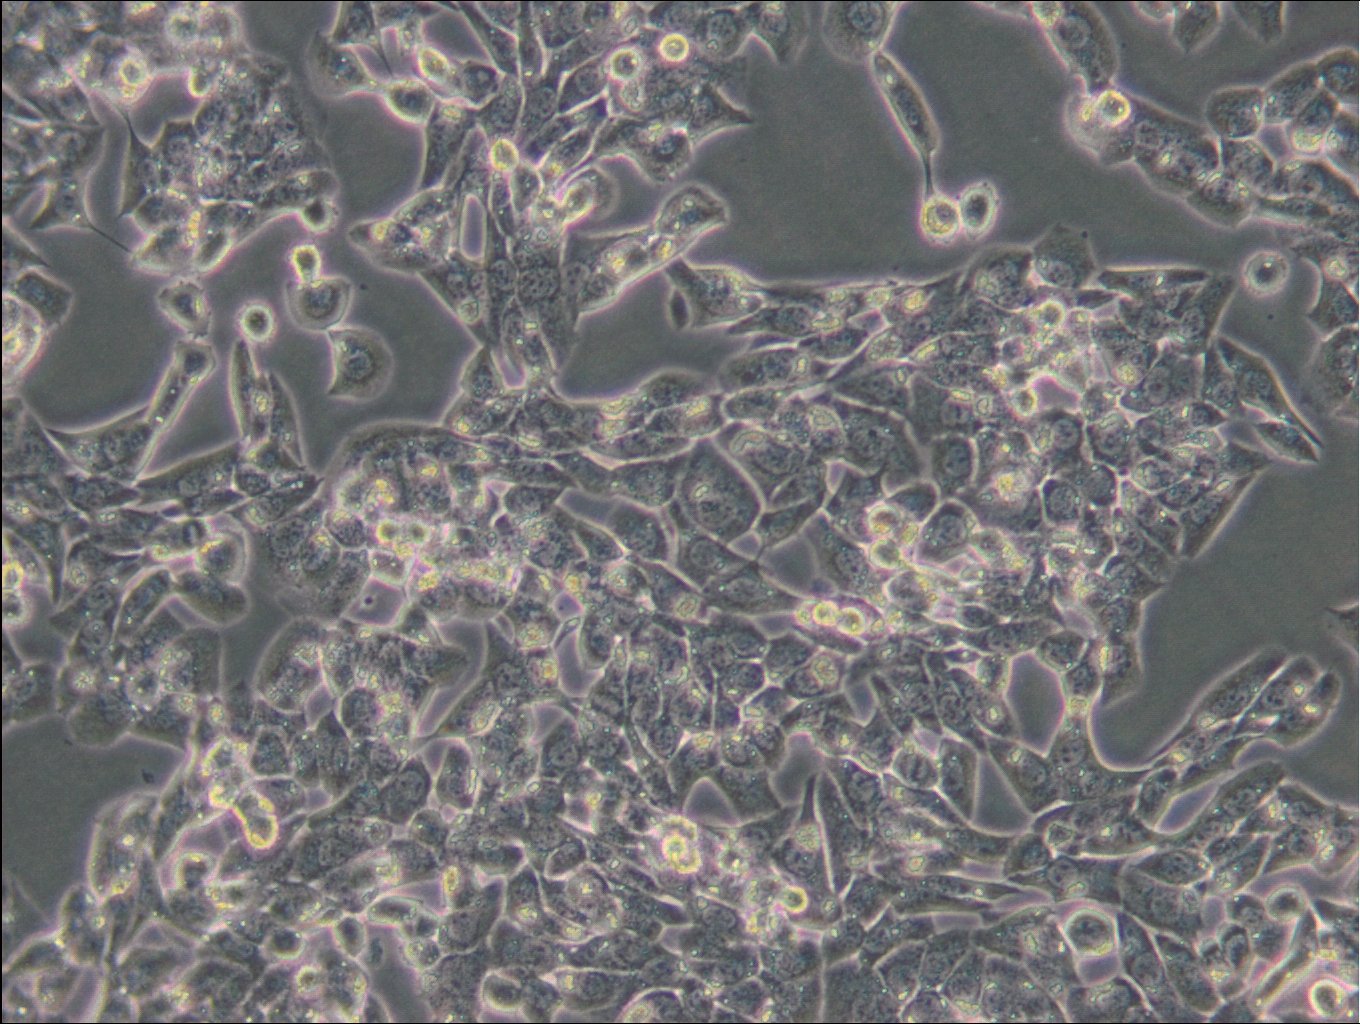 MLTC-1 Cells